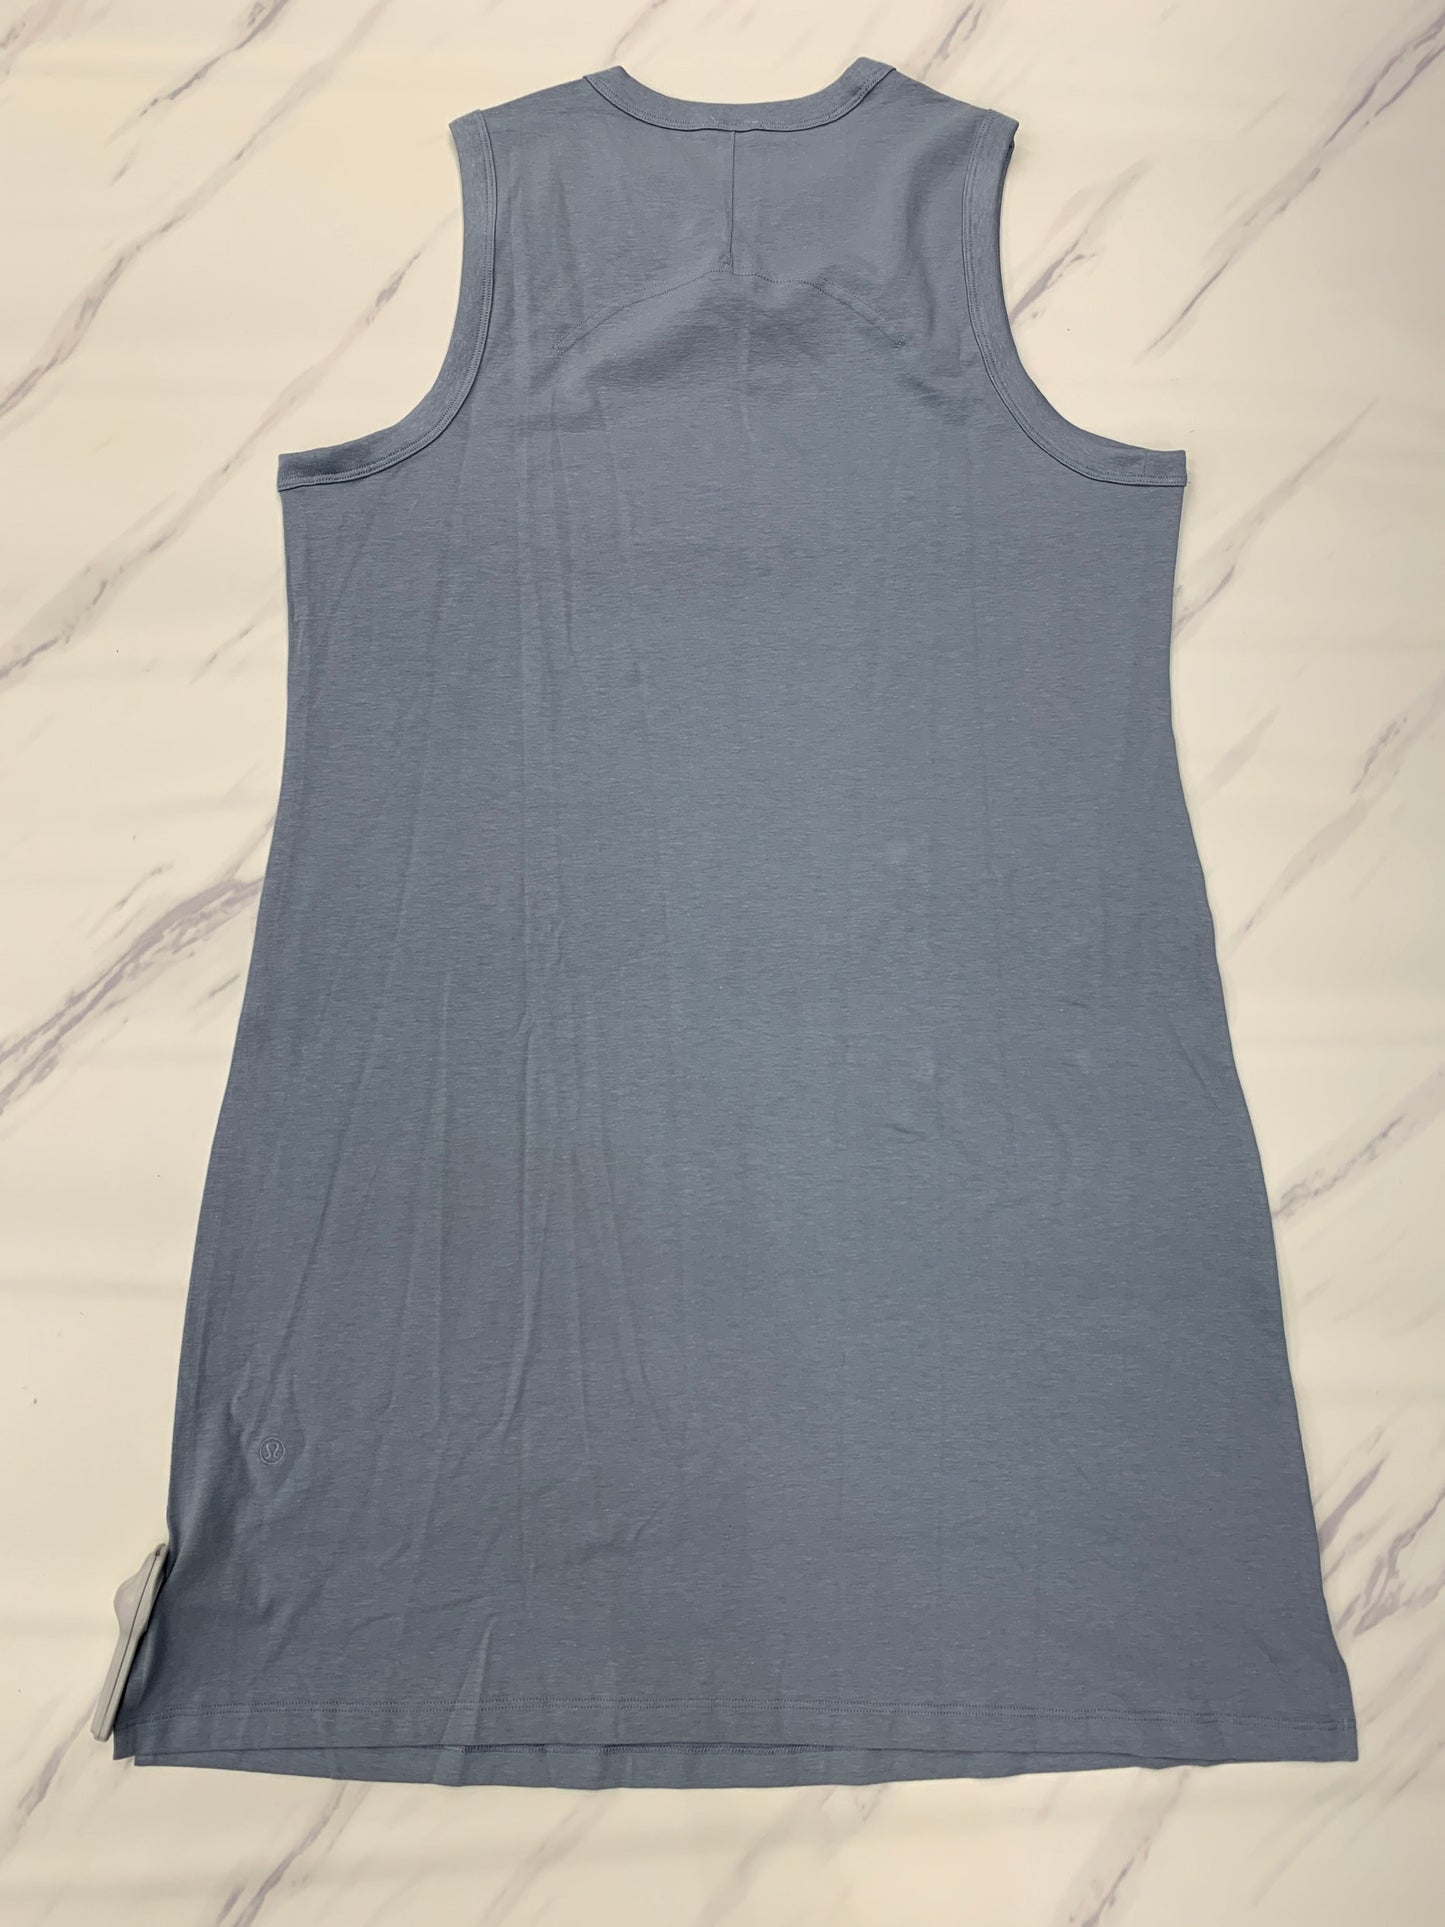 Blue Athletic Dress Lululemon, Size 8